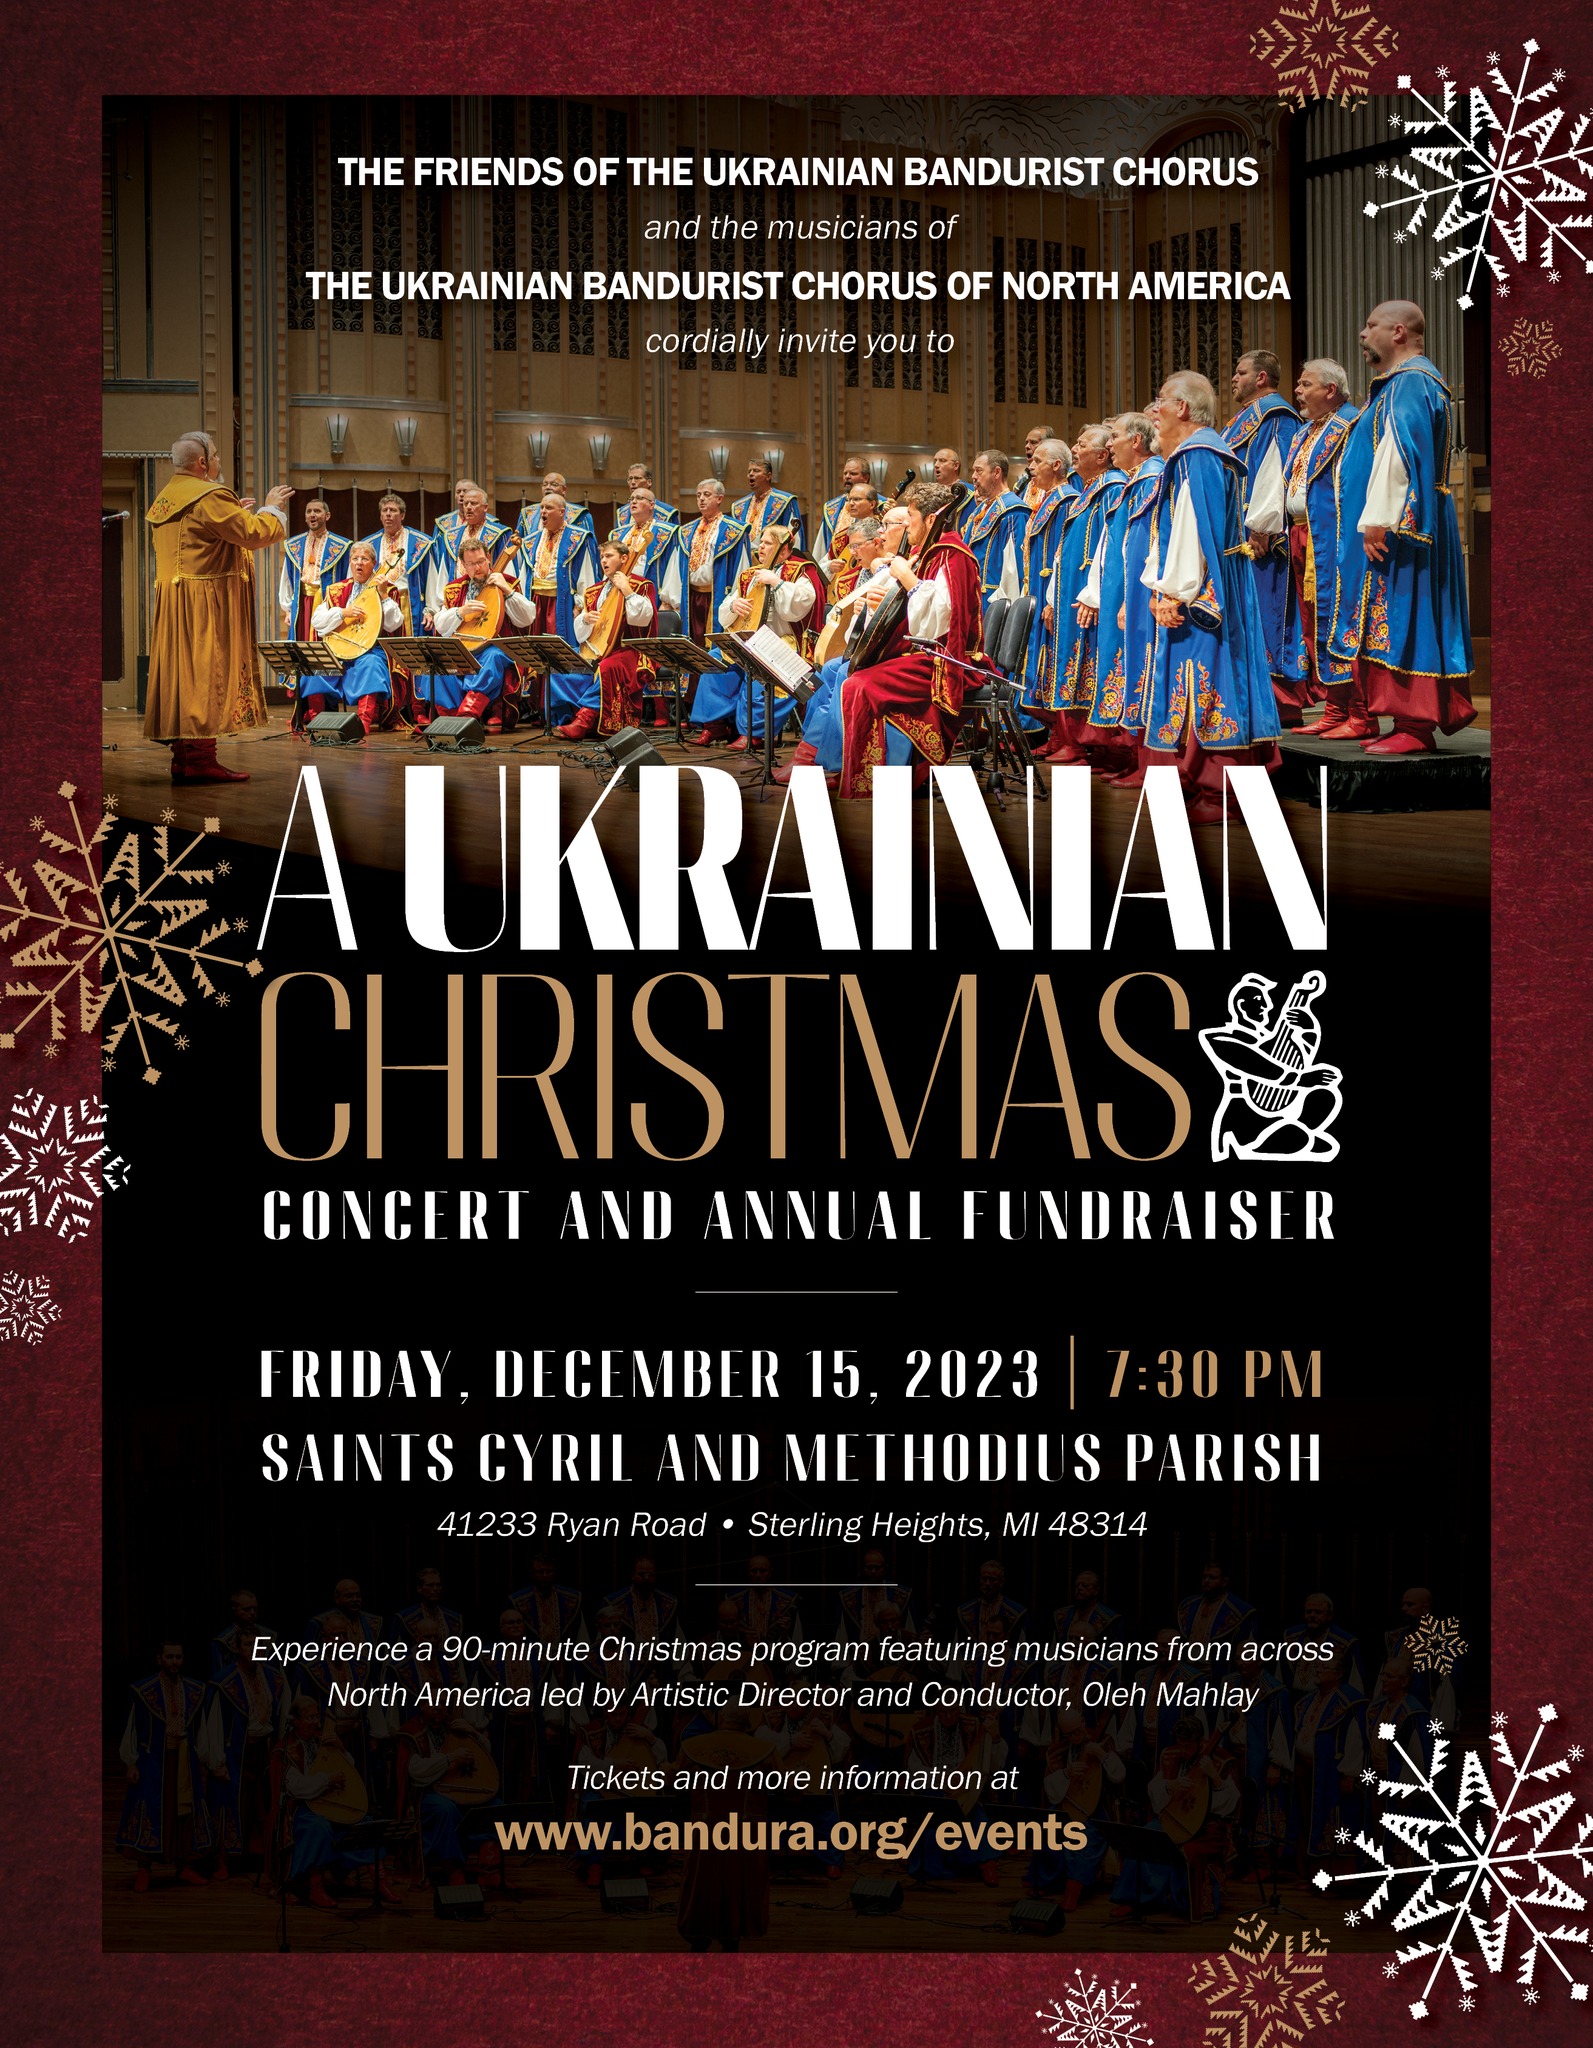 A Ukrainian Christmas Concert and Annual Fundraiser